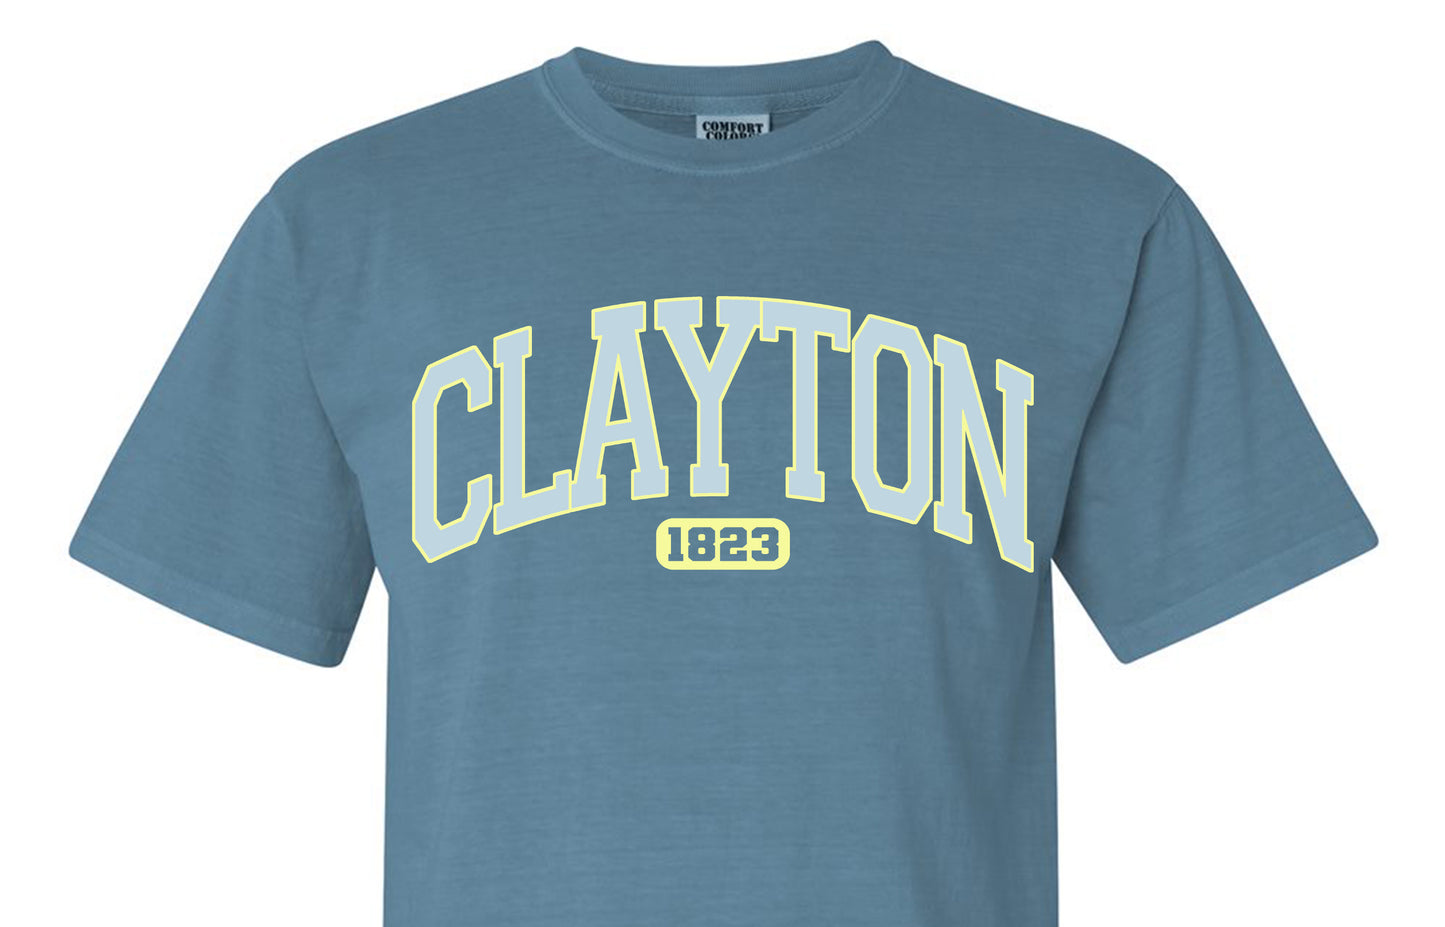 Vintage Clayton Tee - Ice Blue